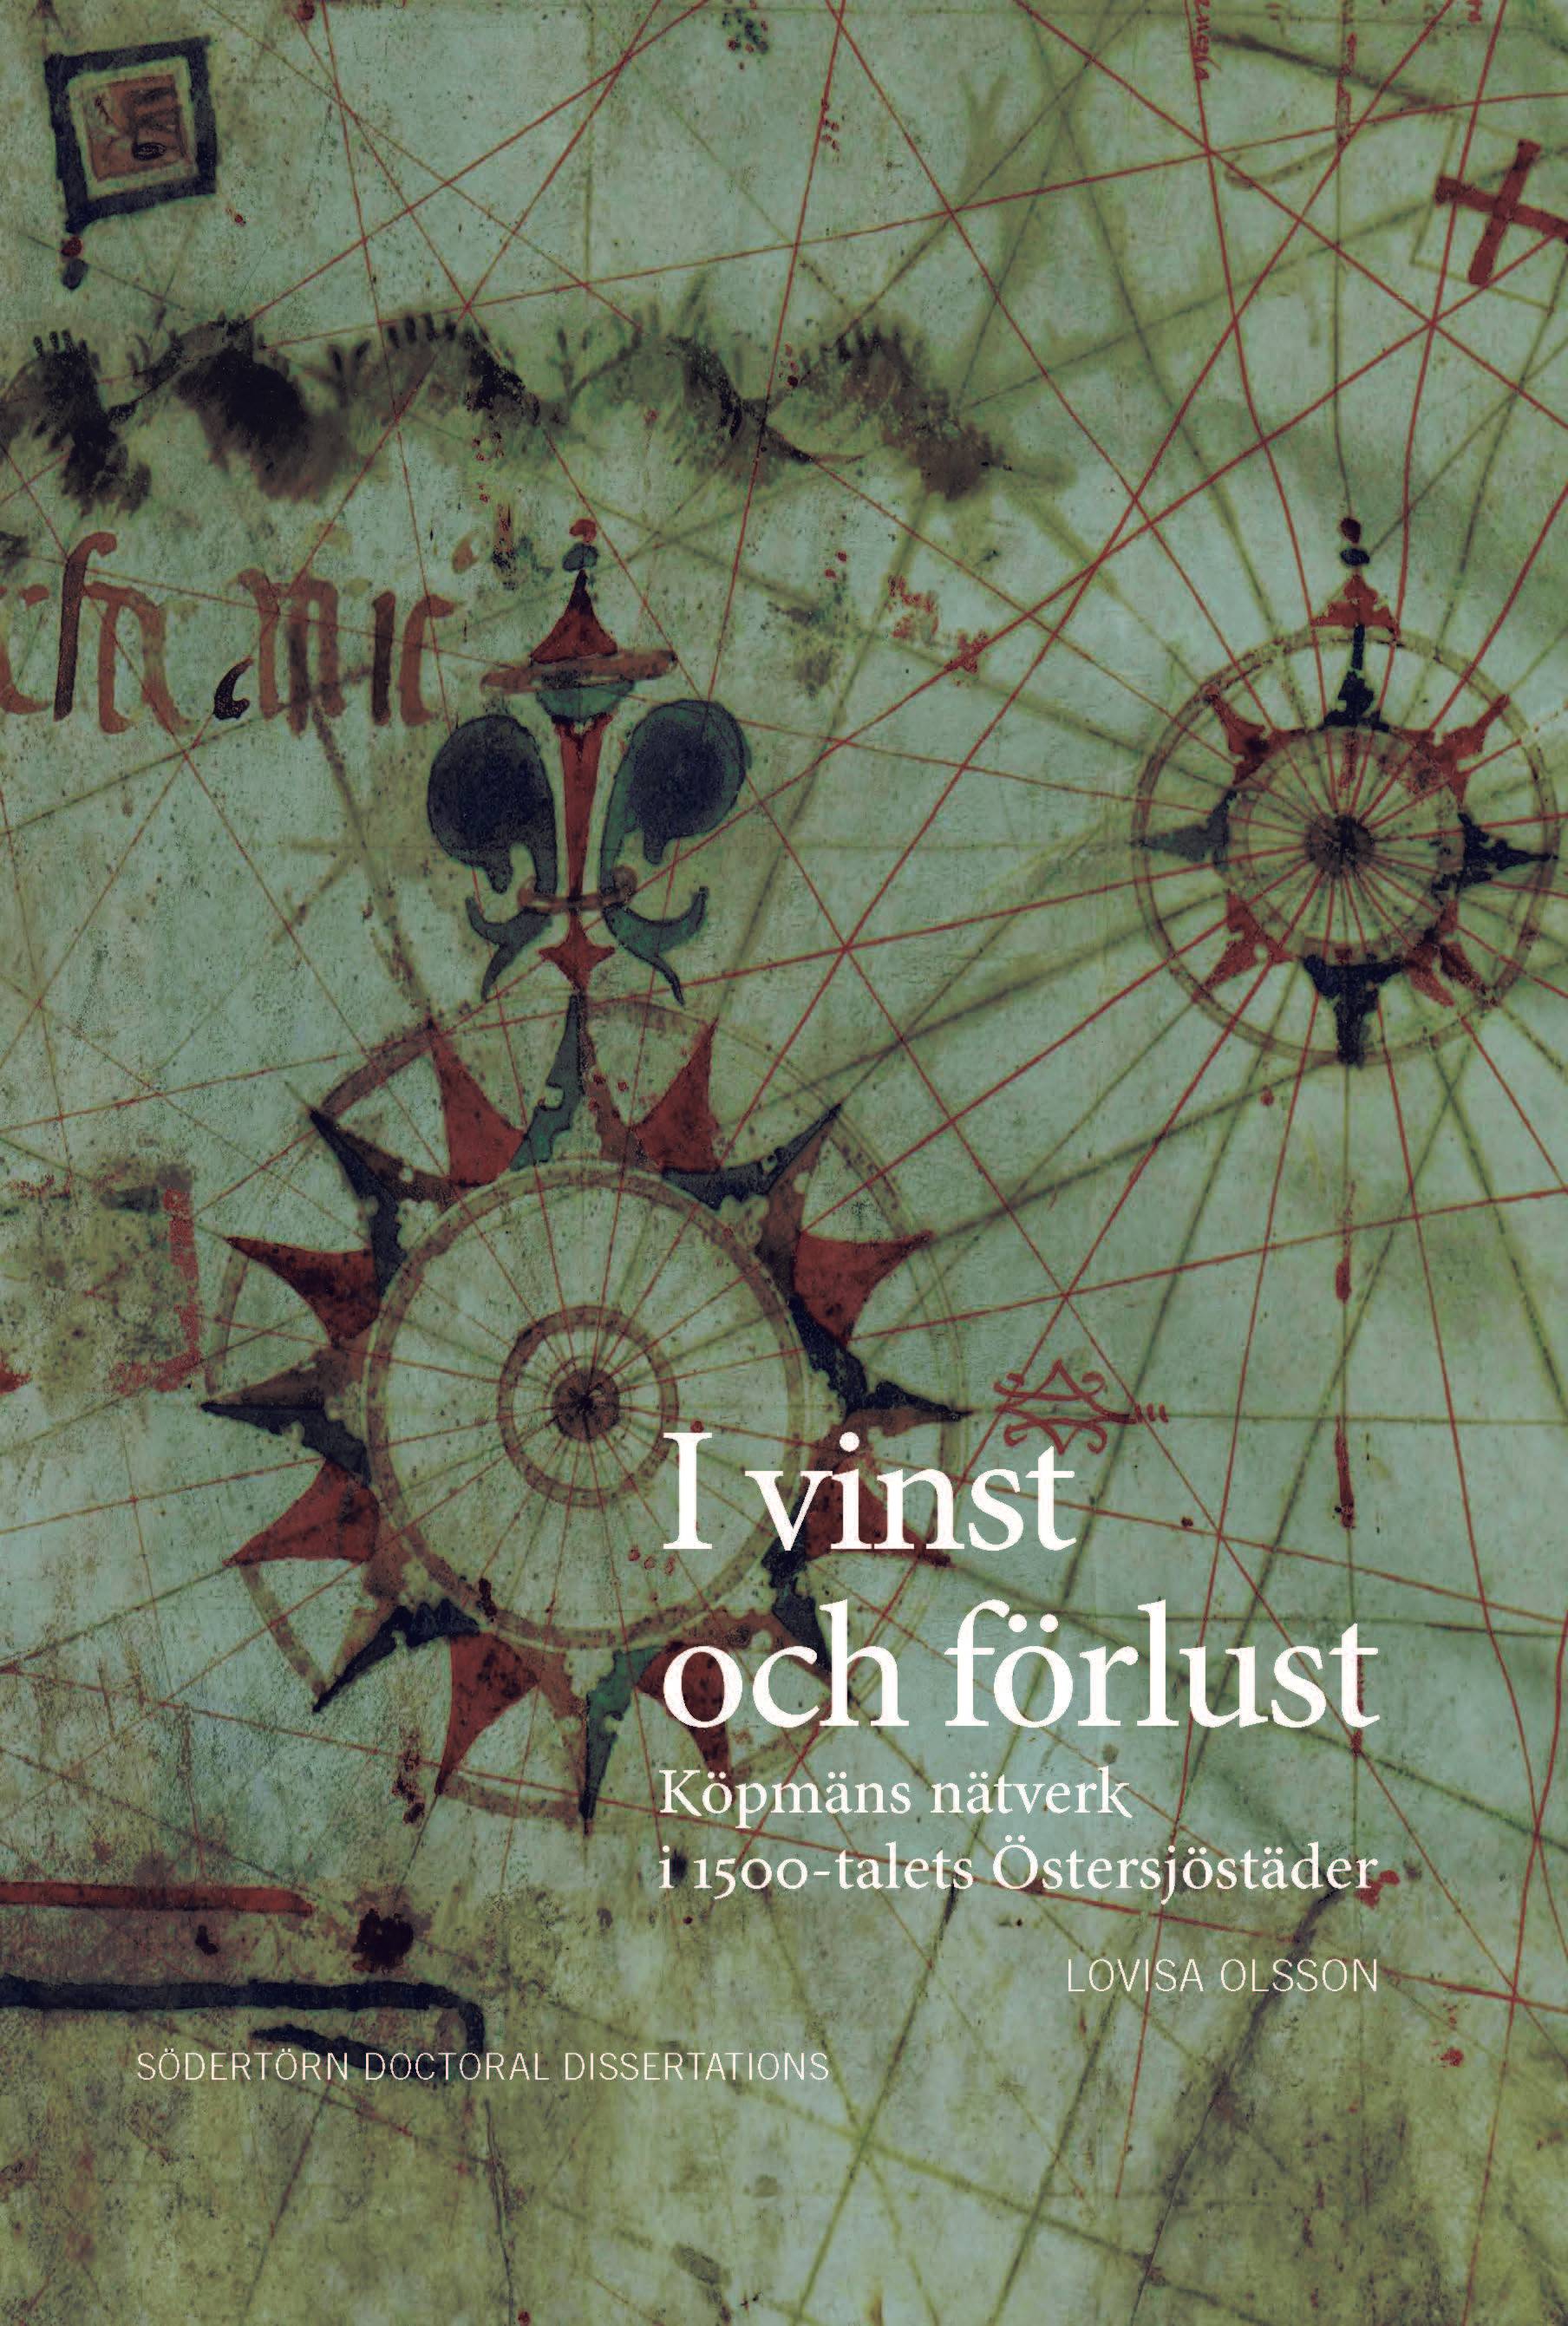 I vinst och förlust : köpmäns nätverk i 1500-talets Östersjöstäder